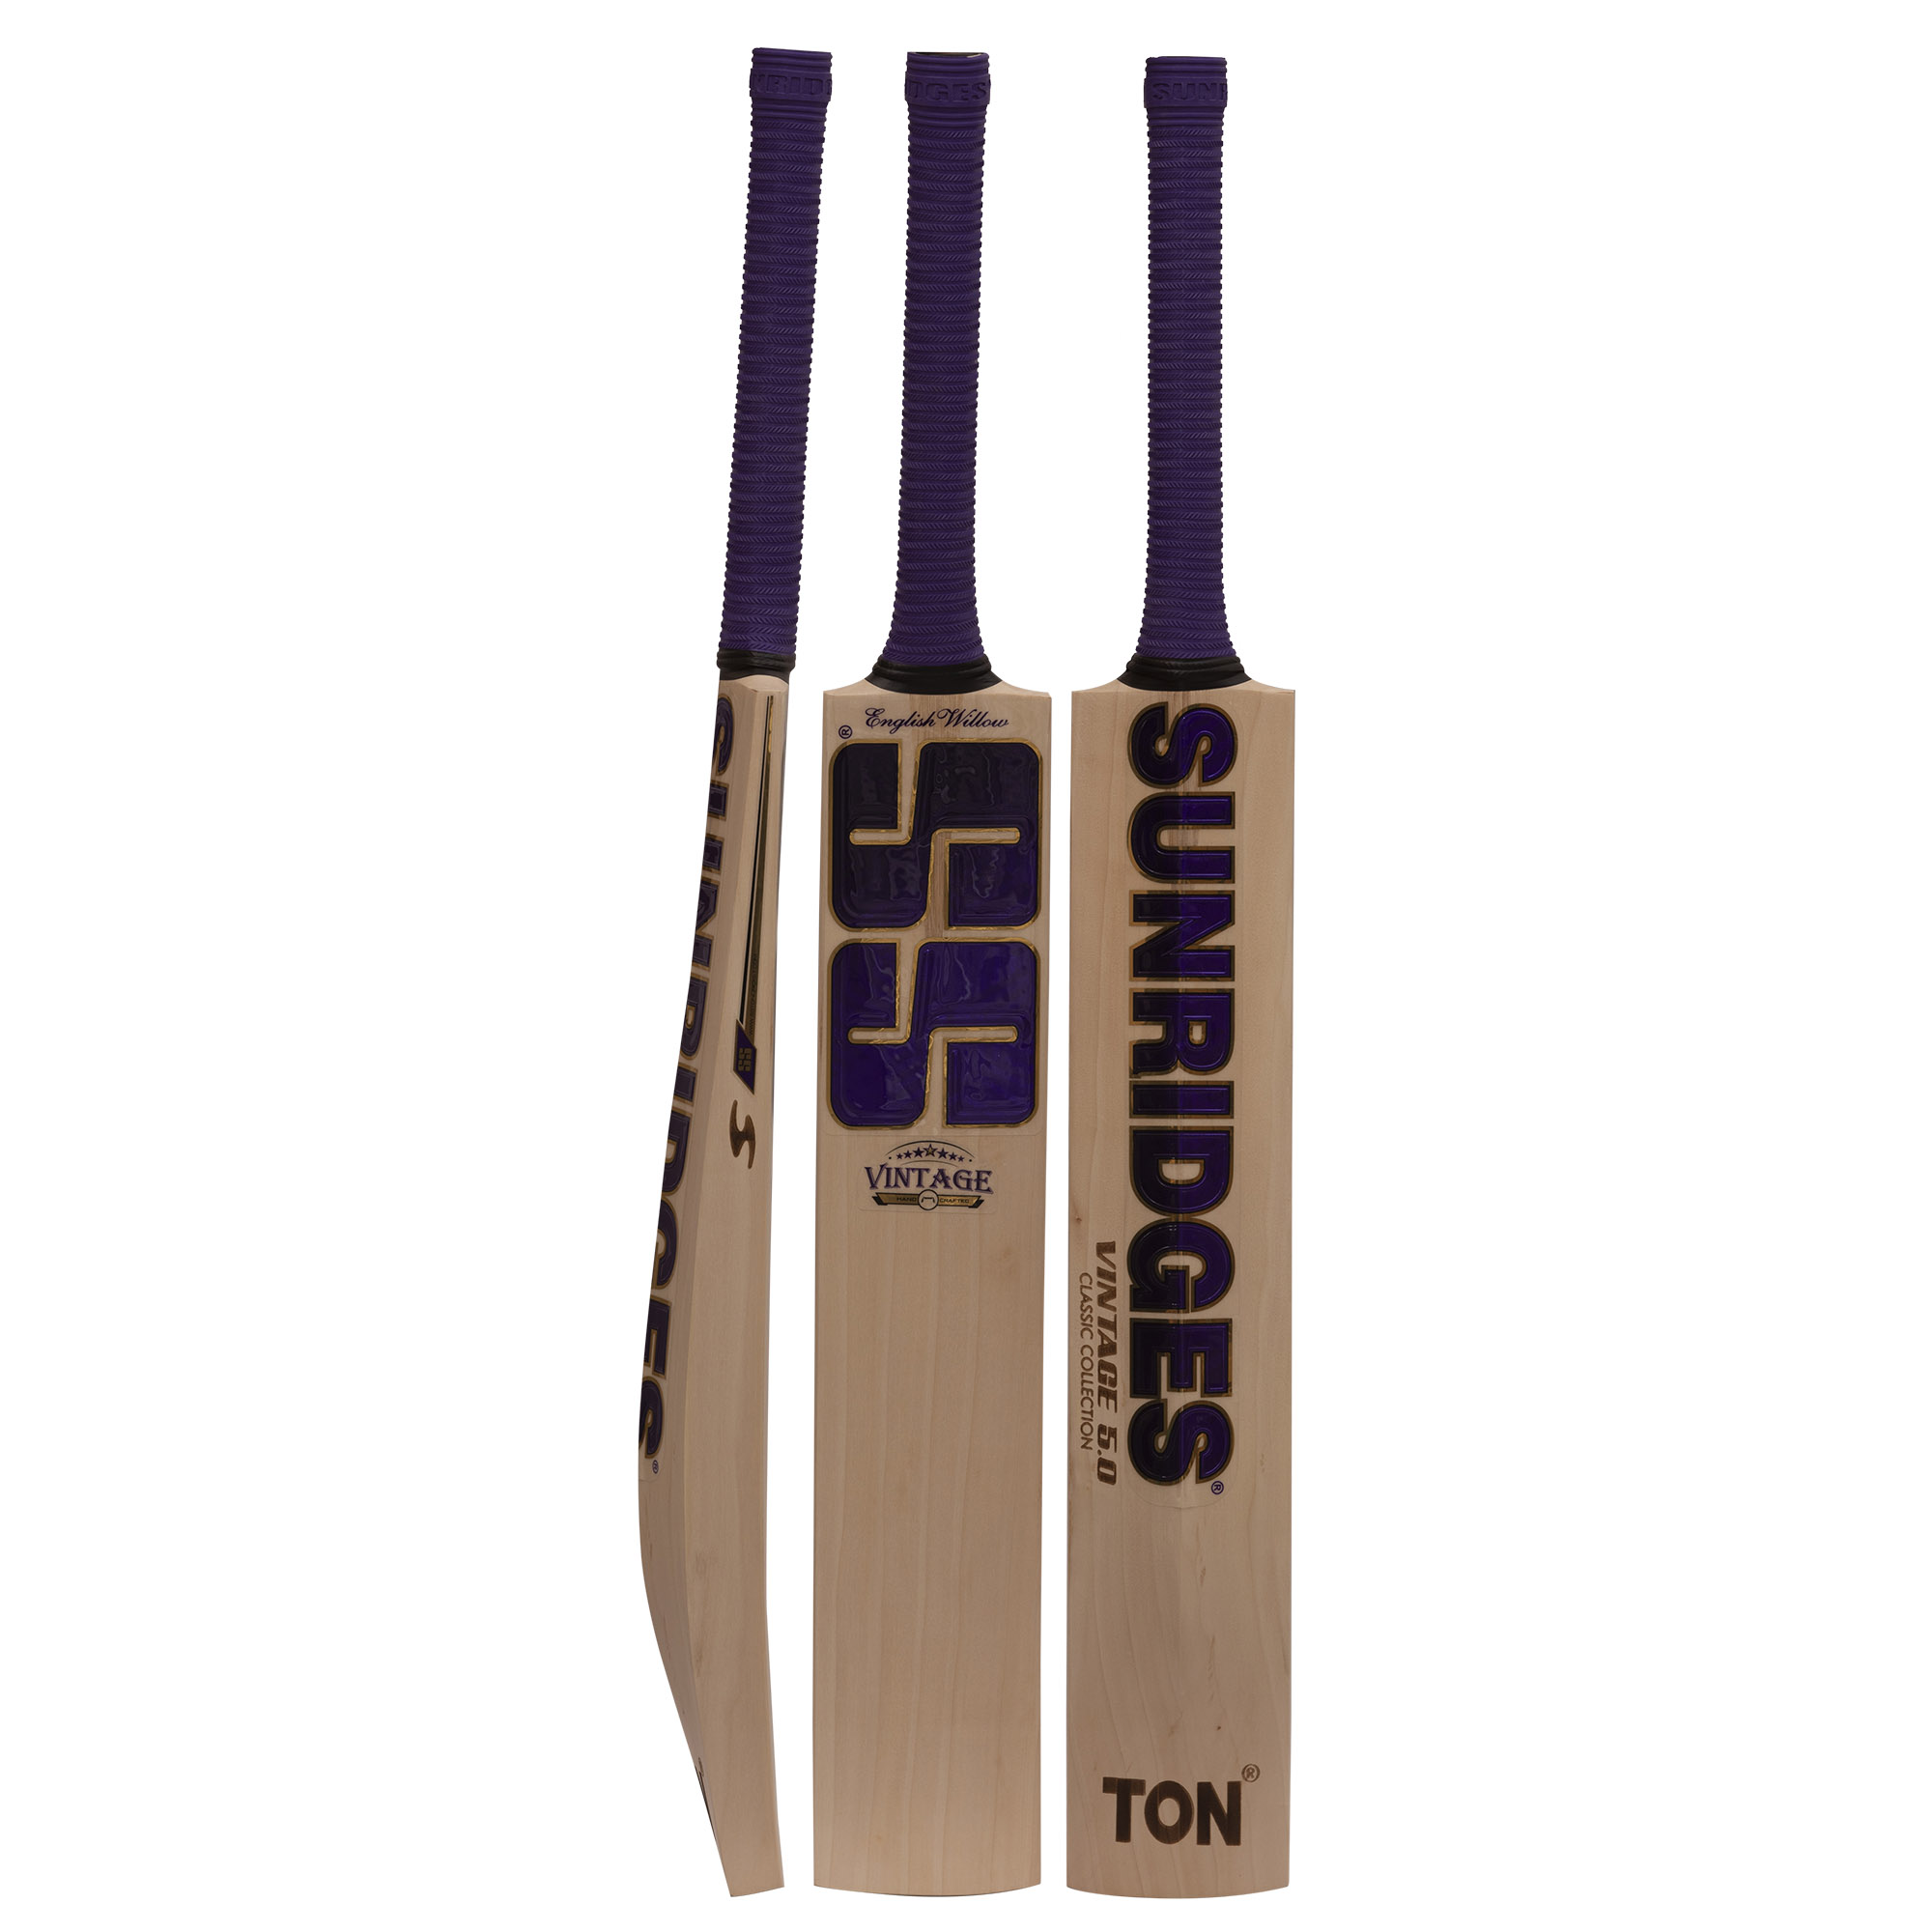 SS-Vintage-5.0-Cricket-Bat